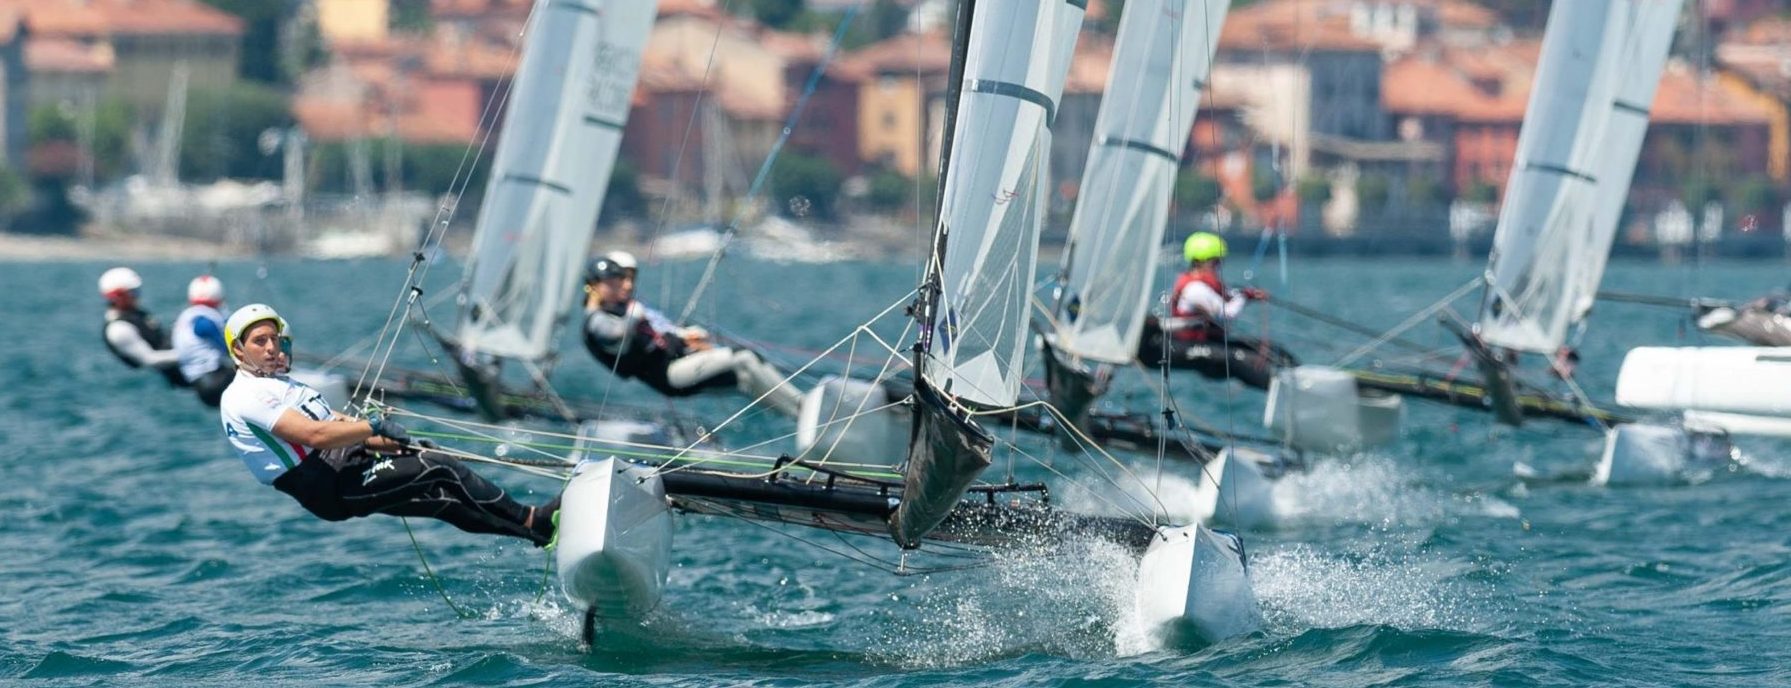 Olimpiai hajóosztályok versenyeznek Balatonfüreden Fotó: Renato Tebaldi / 49er, 49er(FX), Nacra17 Junior Worlds 2022